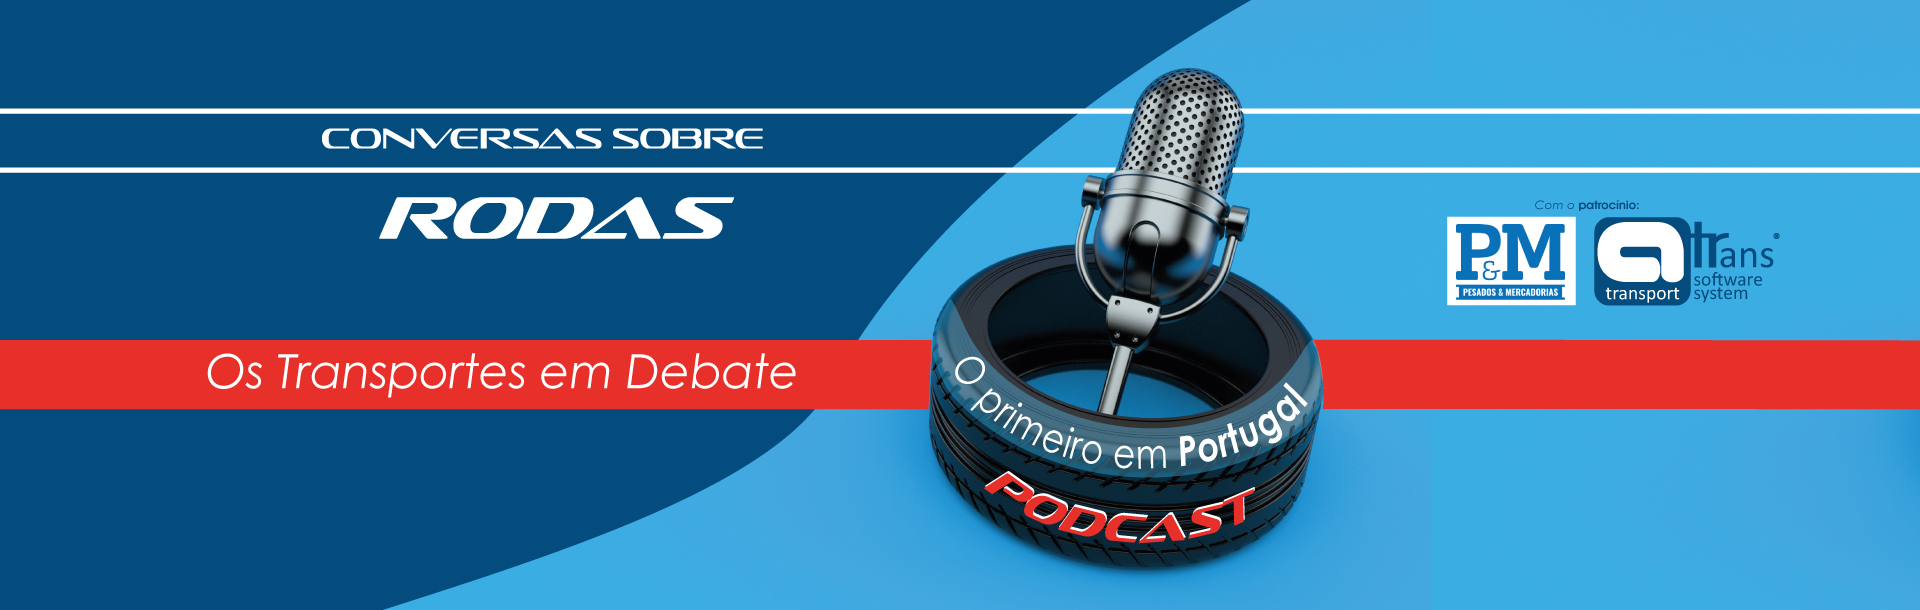 podcast_conversas_sobre_rodas_site_1.jpg